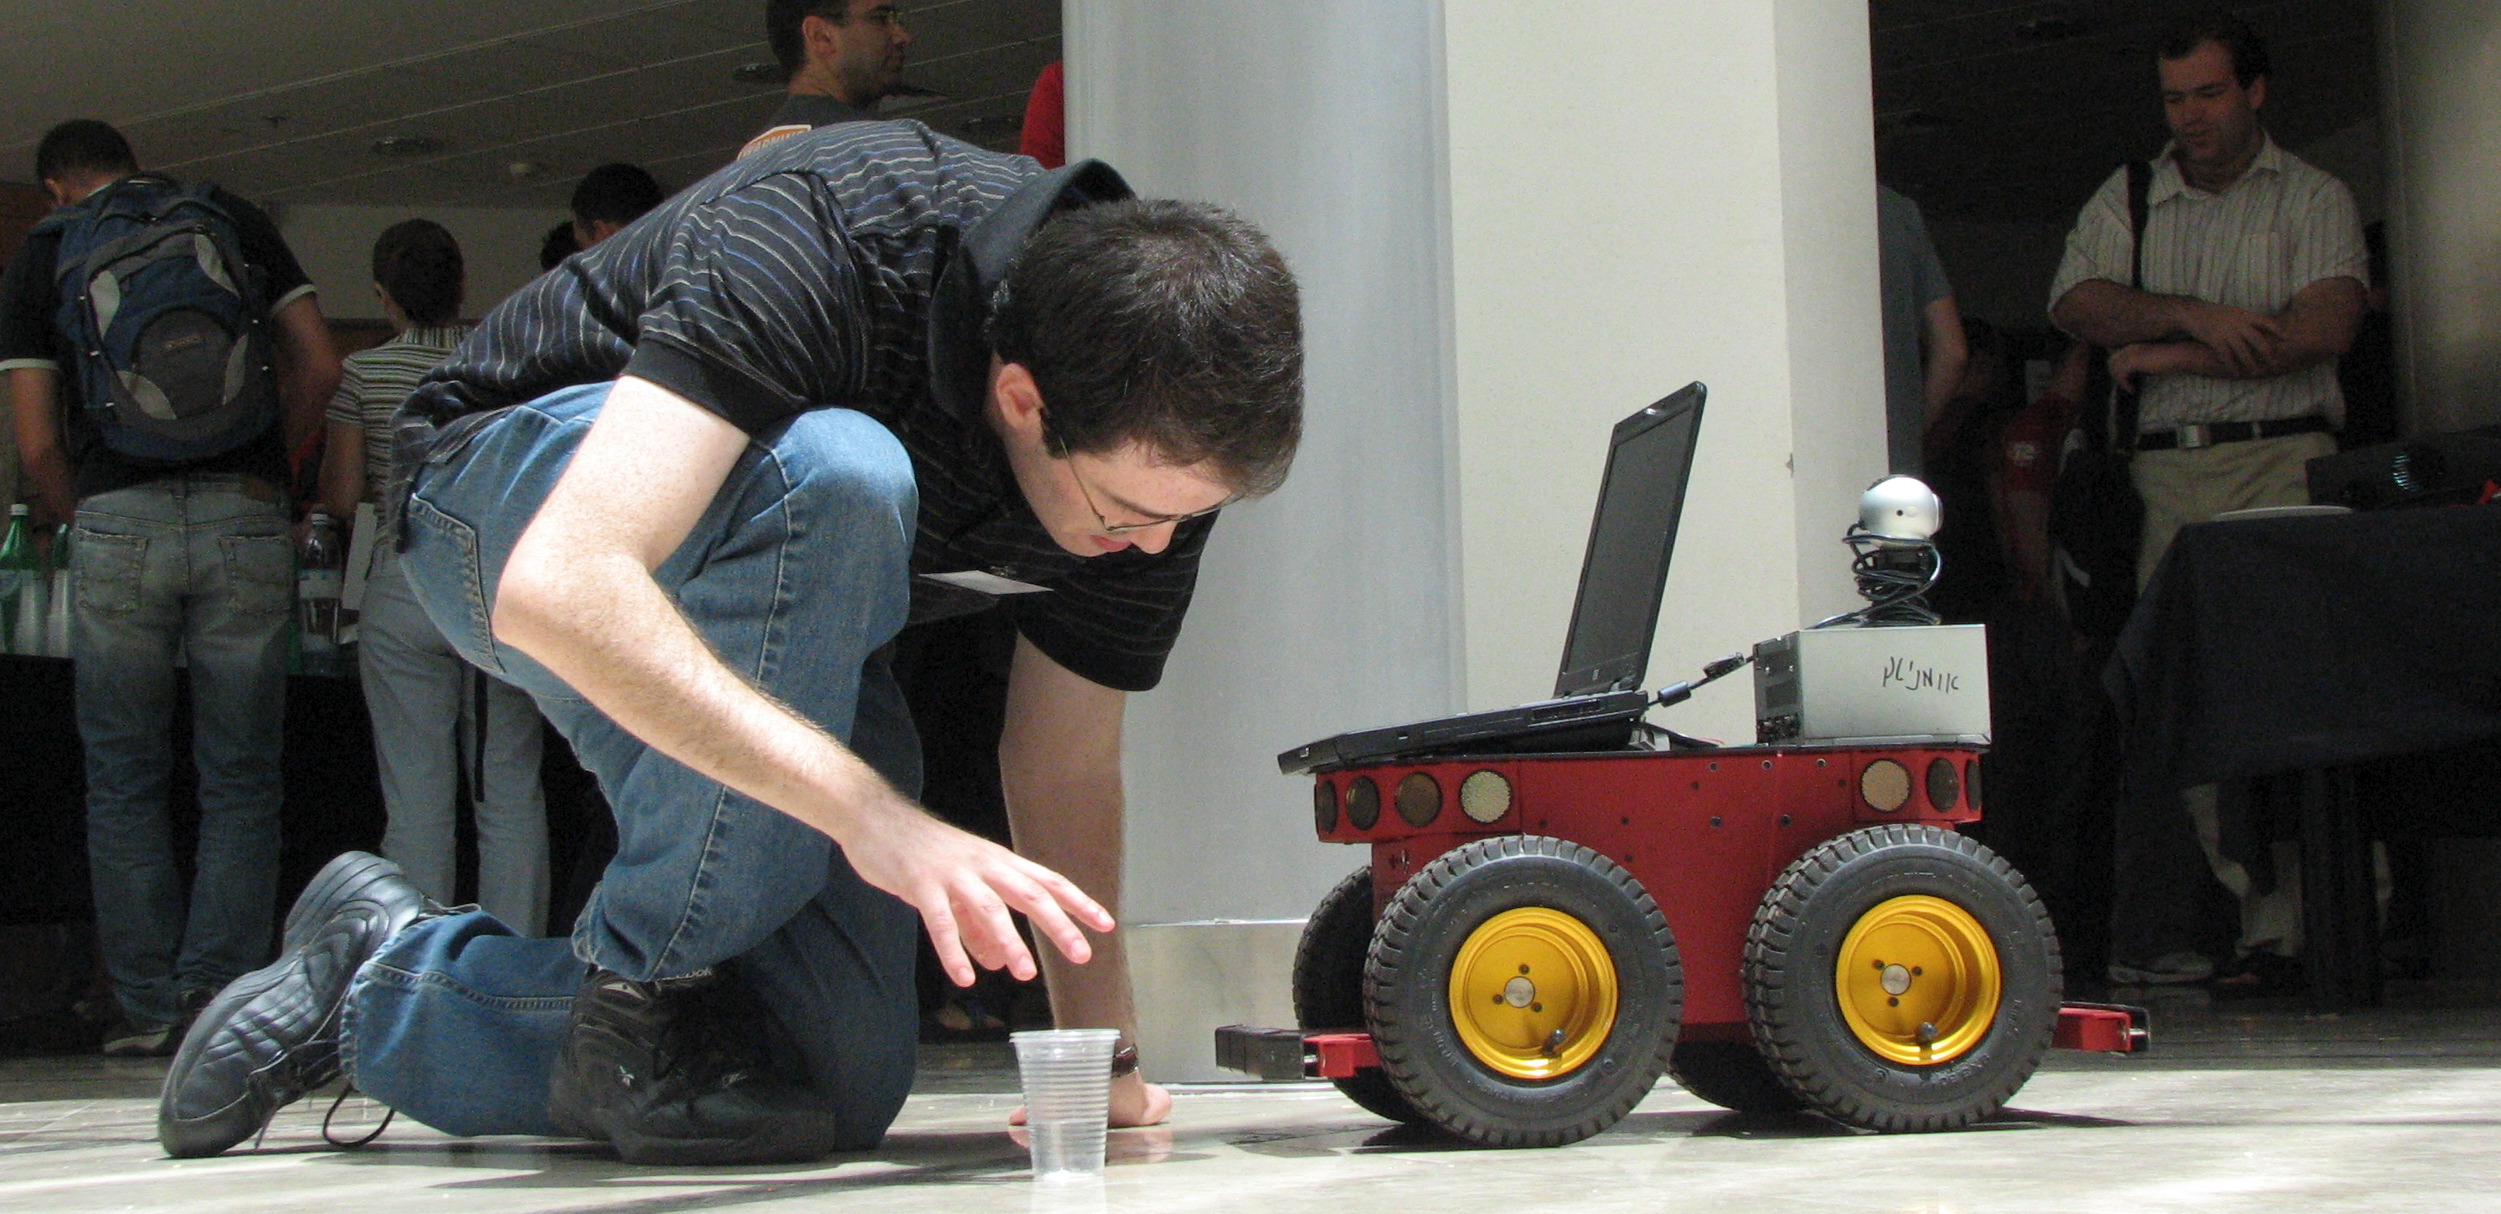 הפעלה של רובוט טרקטור ע"י סטודנט בלובי של מדעי המחשב